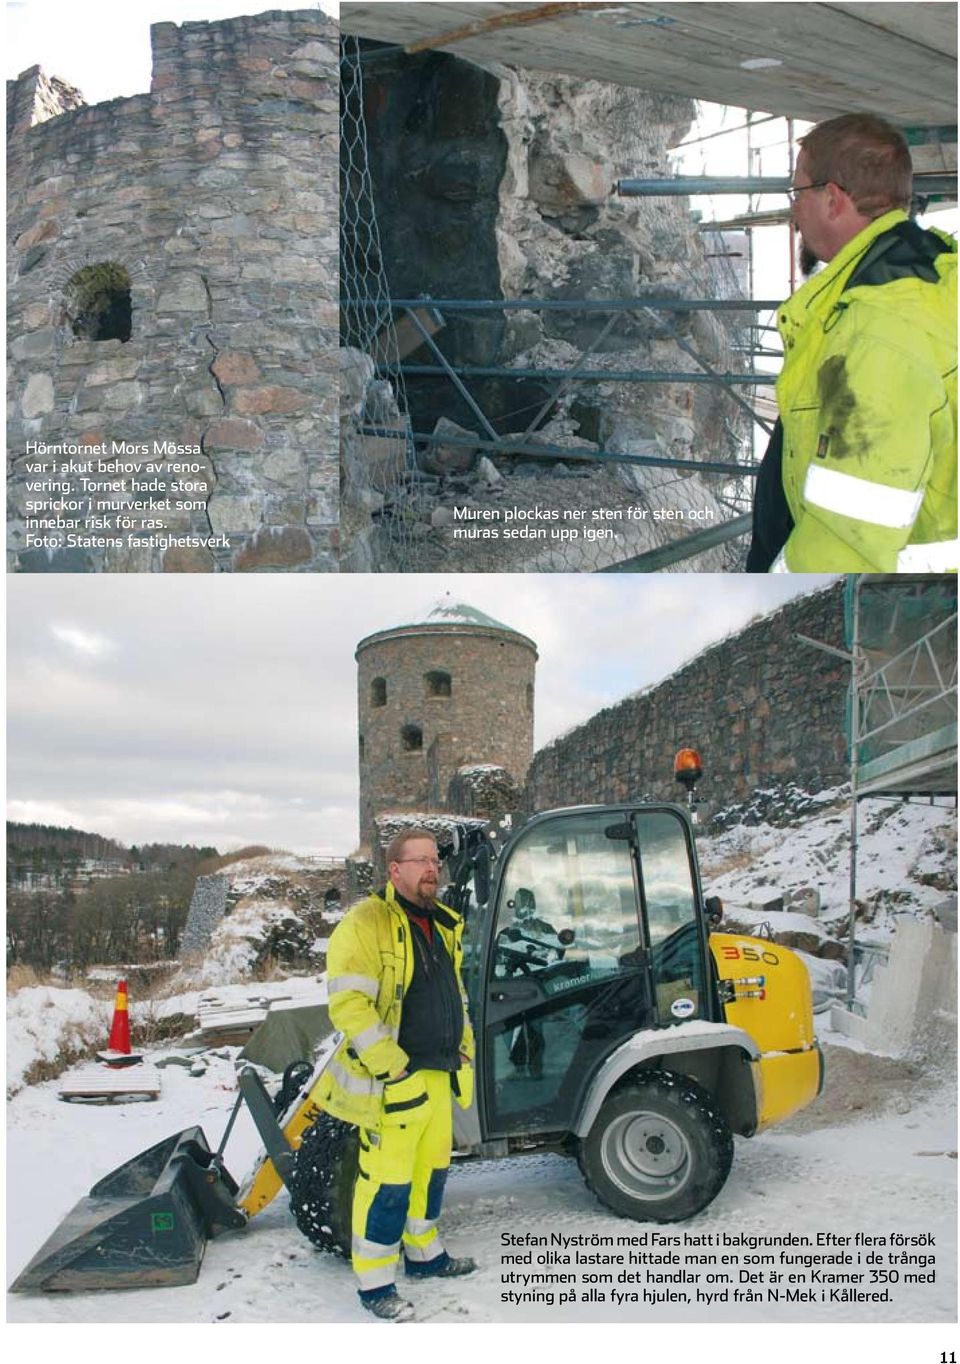 Foto: Statens fastighetsverk Muren plockas ner sten för sten och muras sedan upp igen.